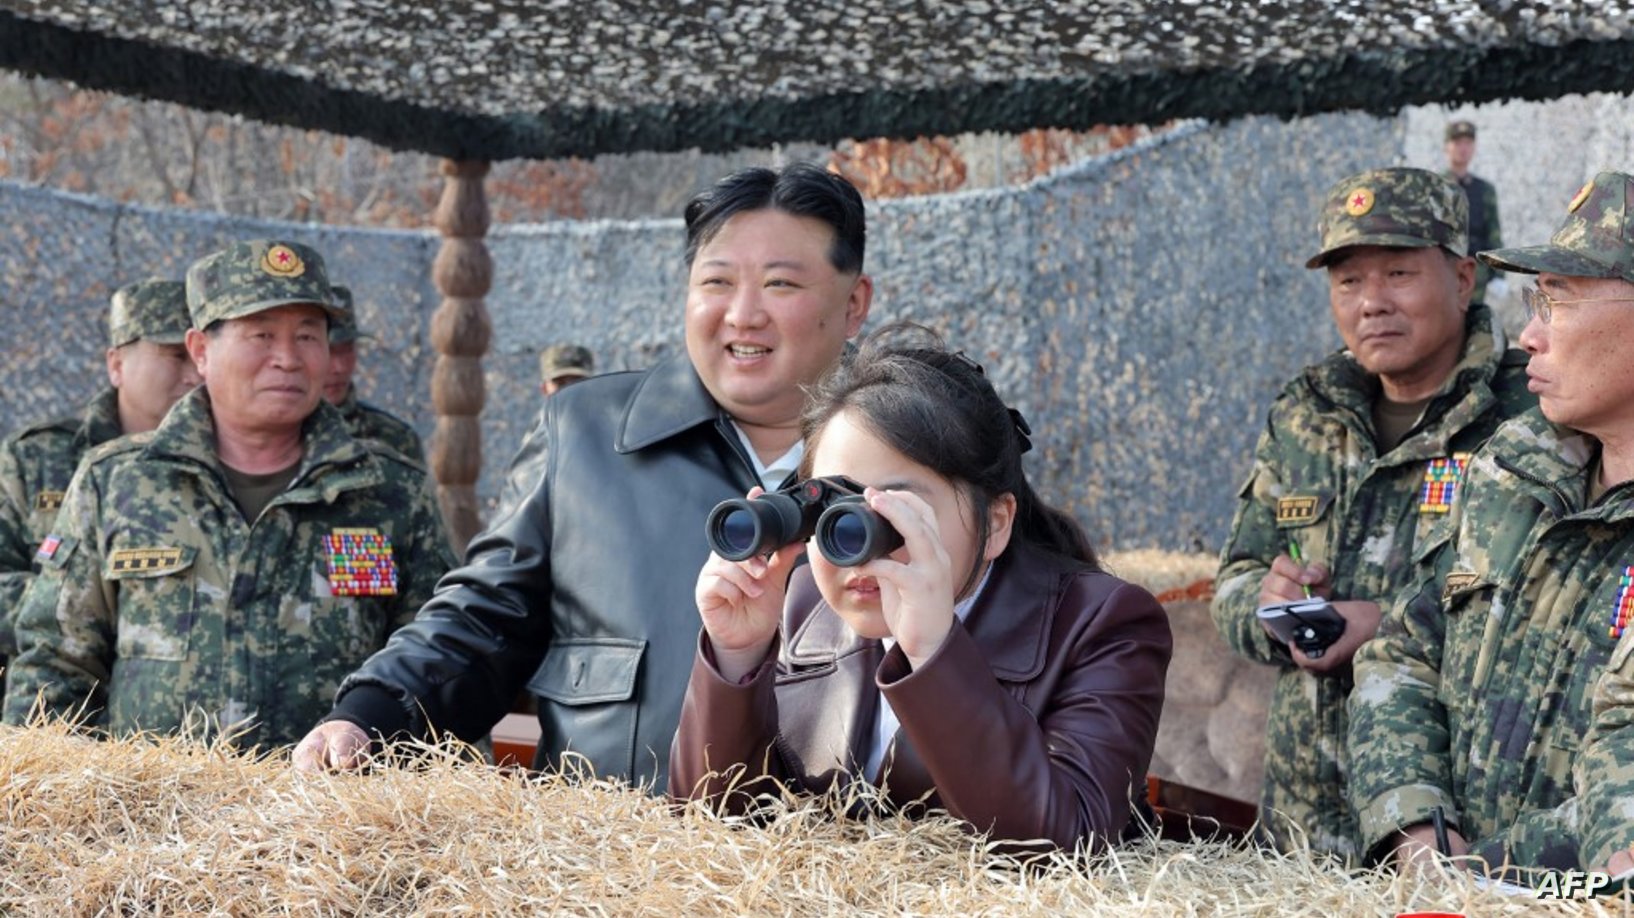 ابنة كيم جونغ أون قد تكون خليفته.. الوكالة الرسمية لكوريا الشمالية تصفها بـ"مرشدة عظمى"